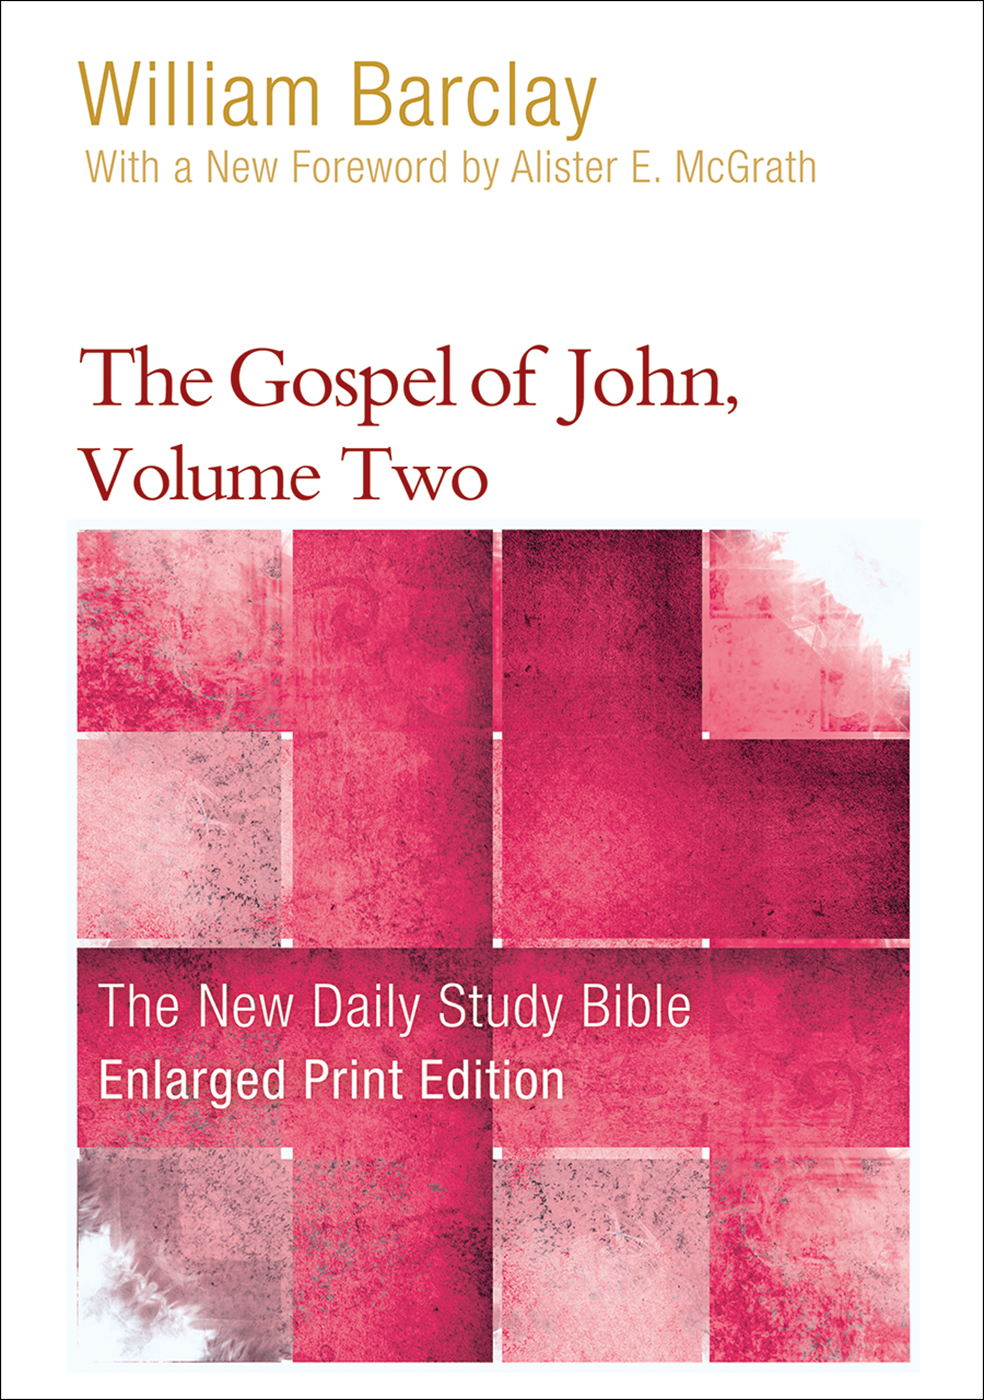 The Gospel of John, Volume Two-Enlarged